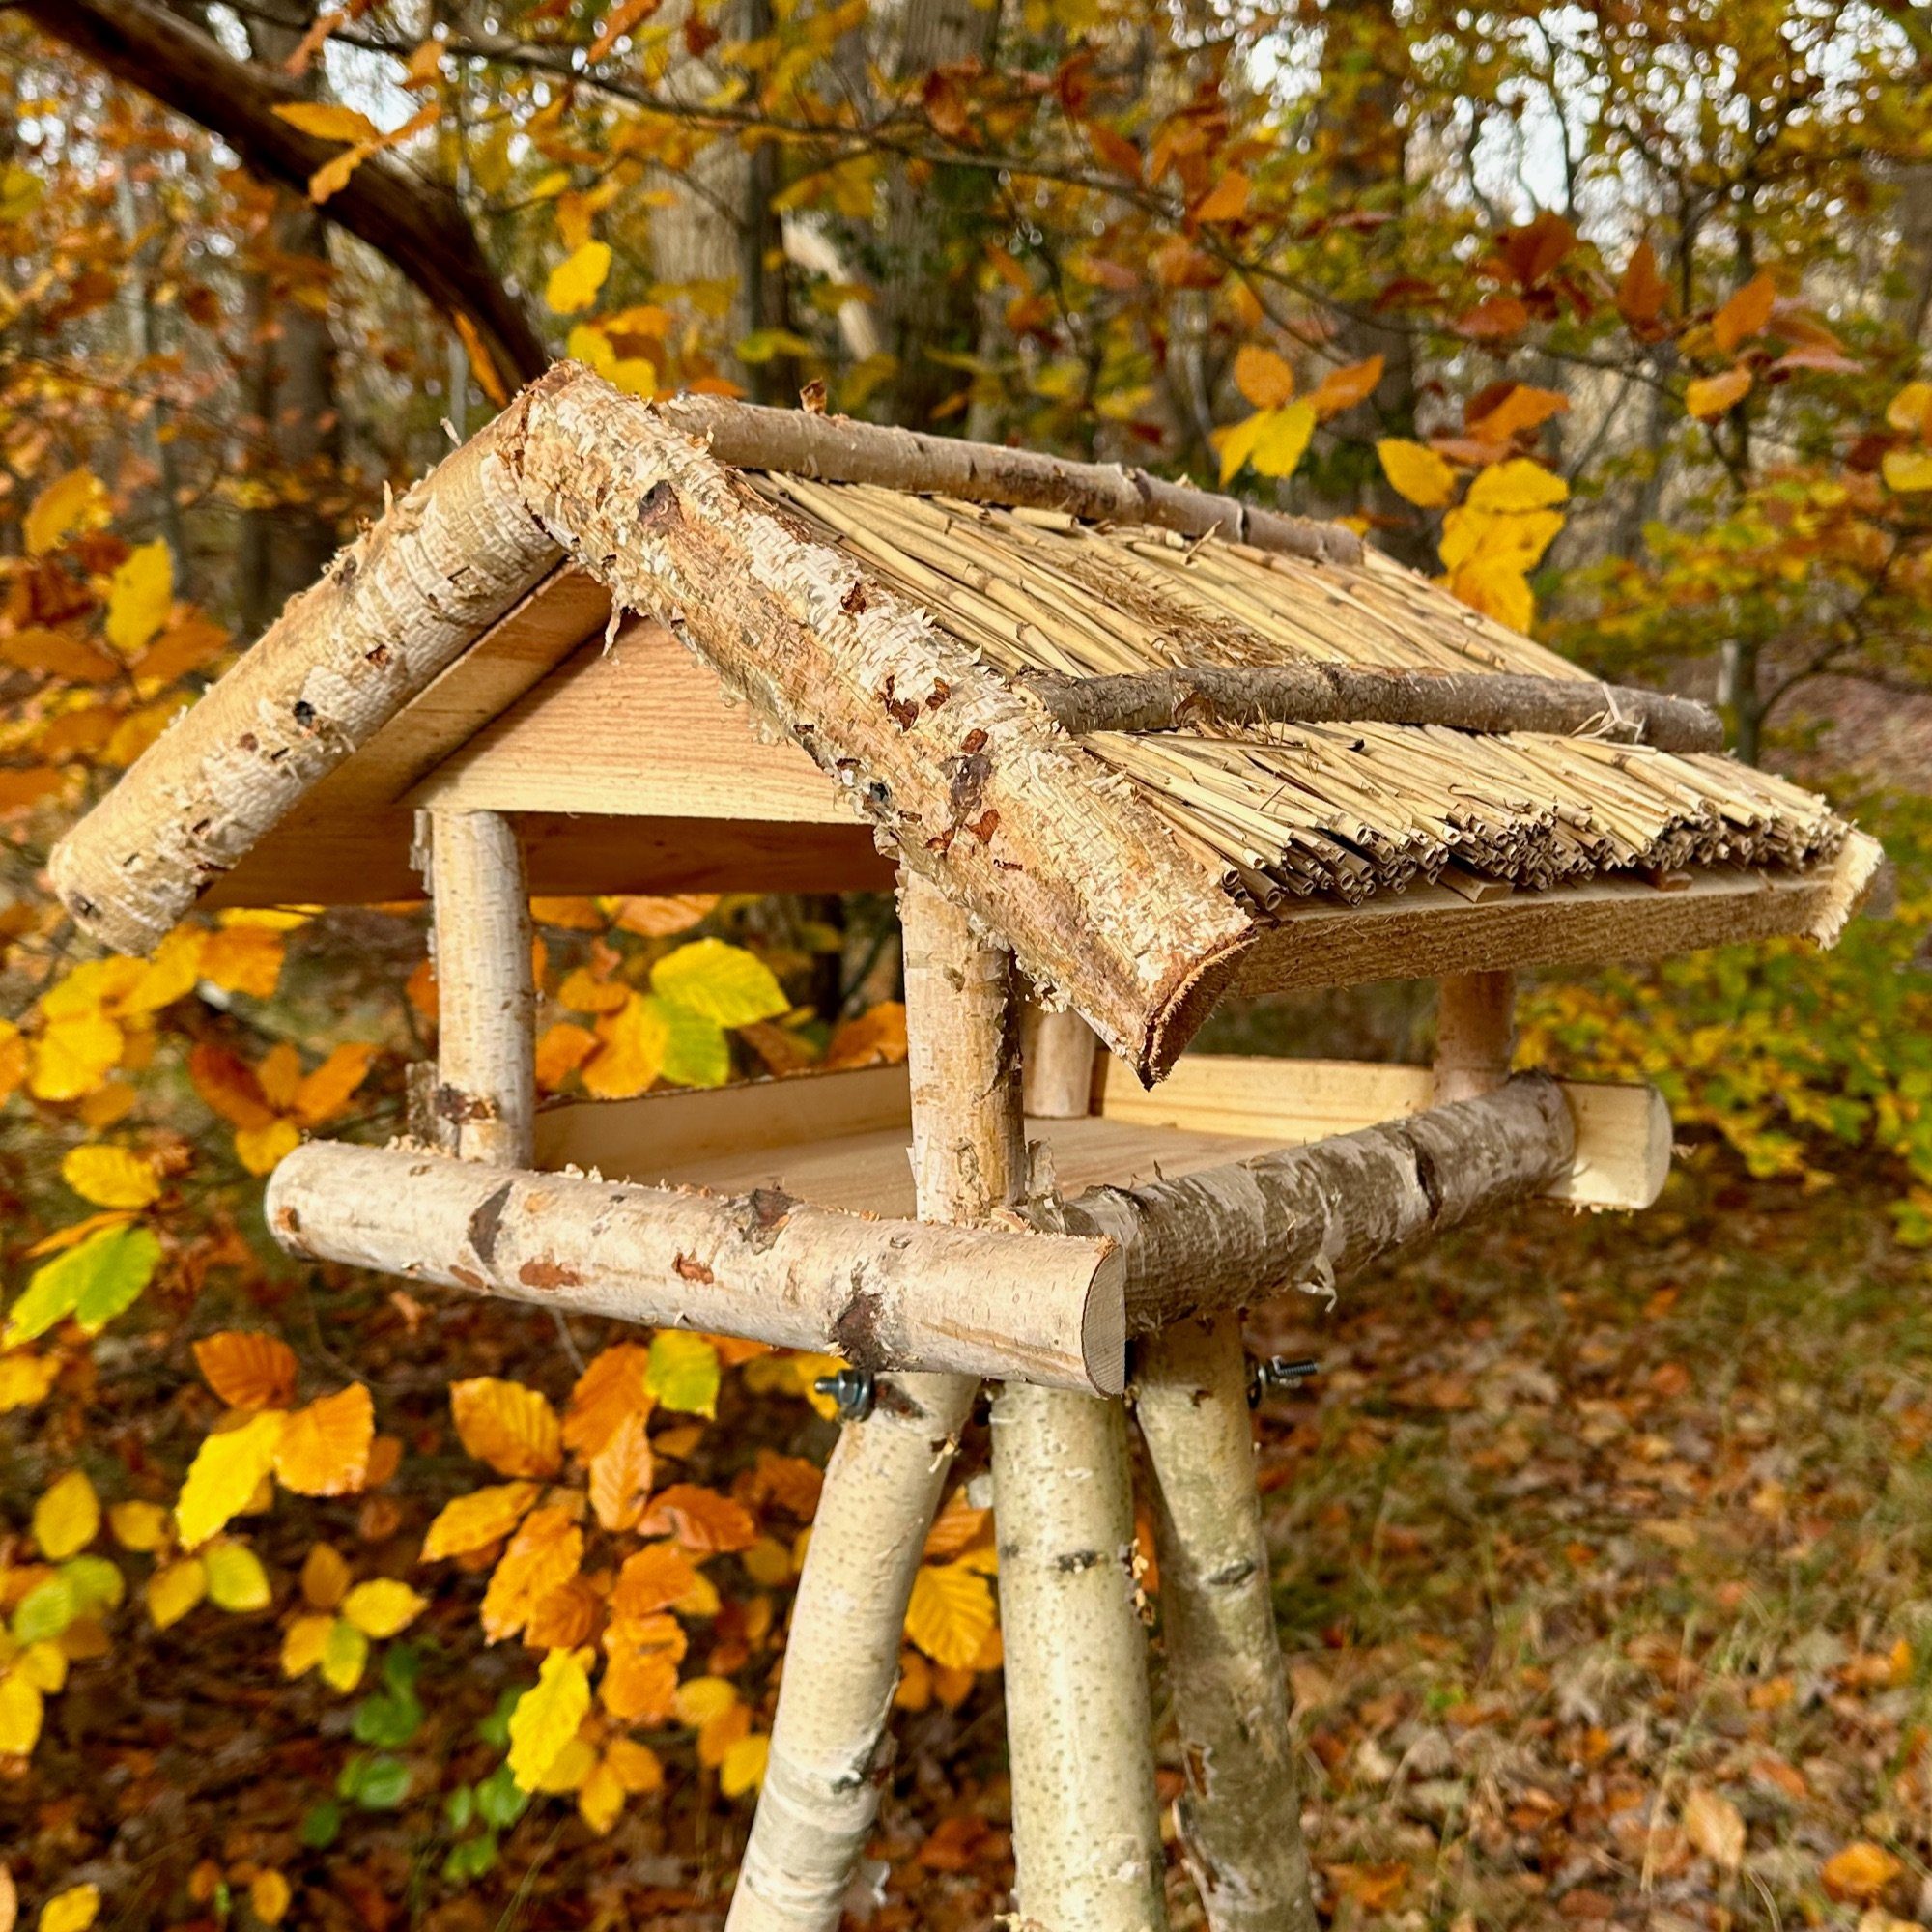 gartenetage Vogelhaus Birken Reetdach, Handarbeit, liebevolle Ständer und Vogelfutterhaus mit Wetterfest